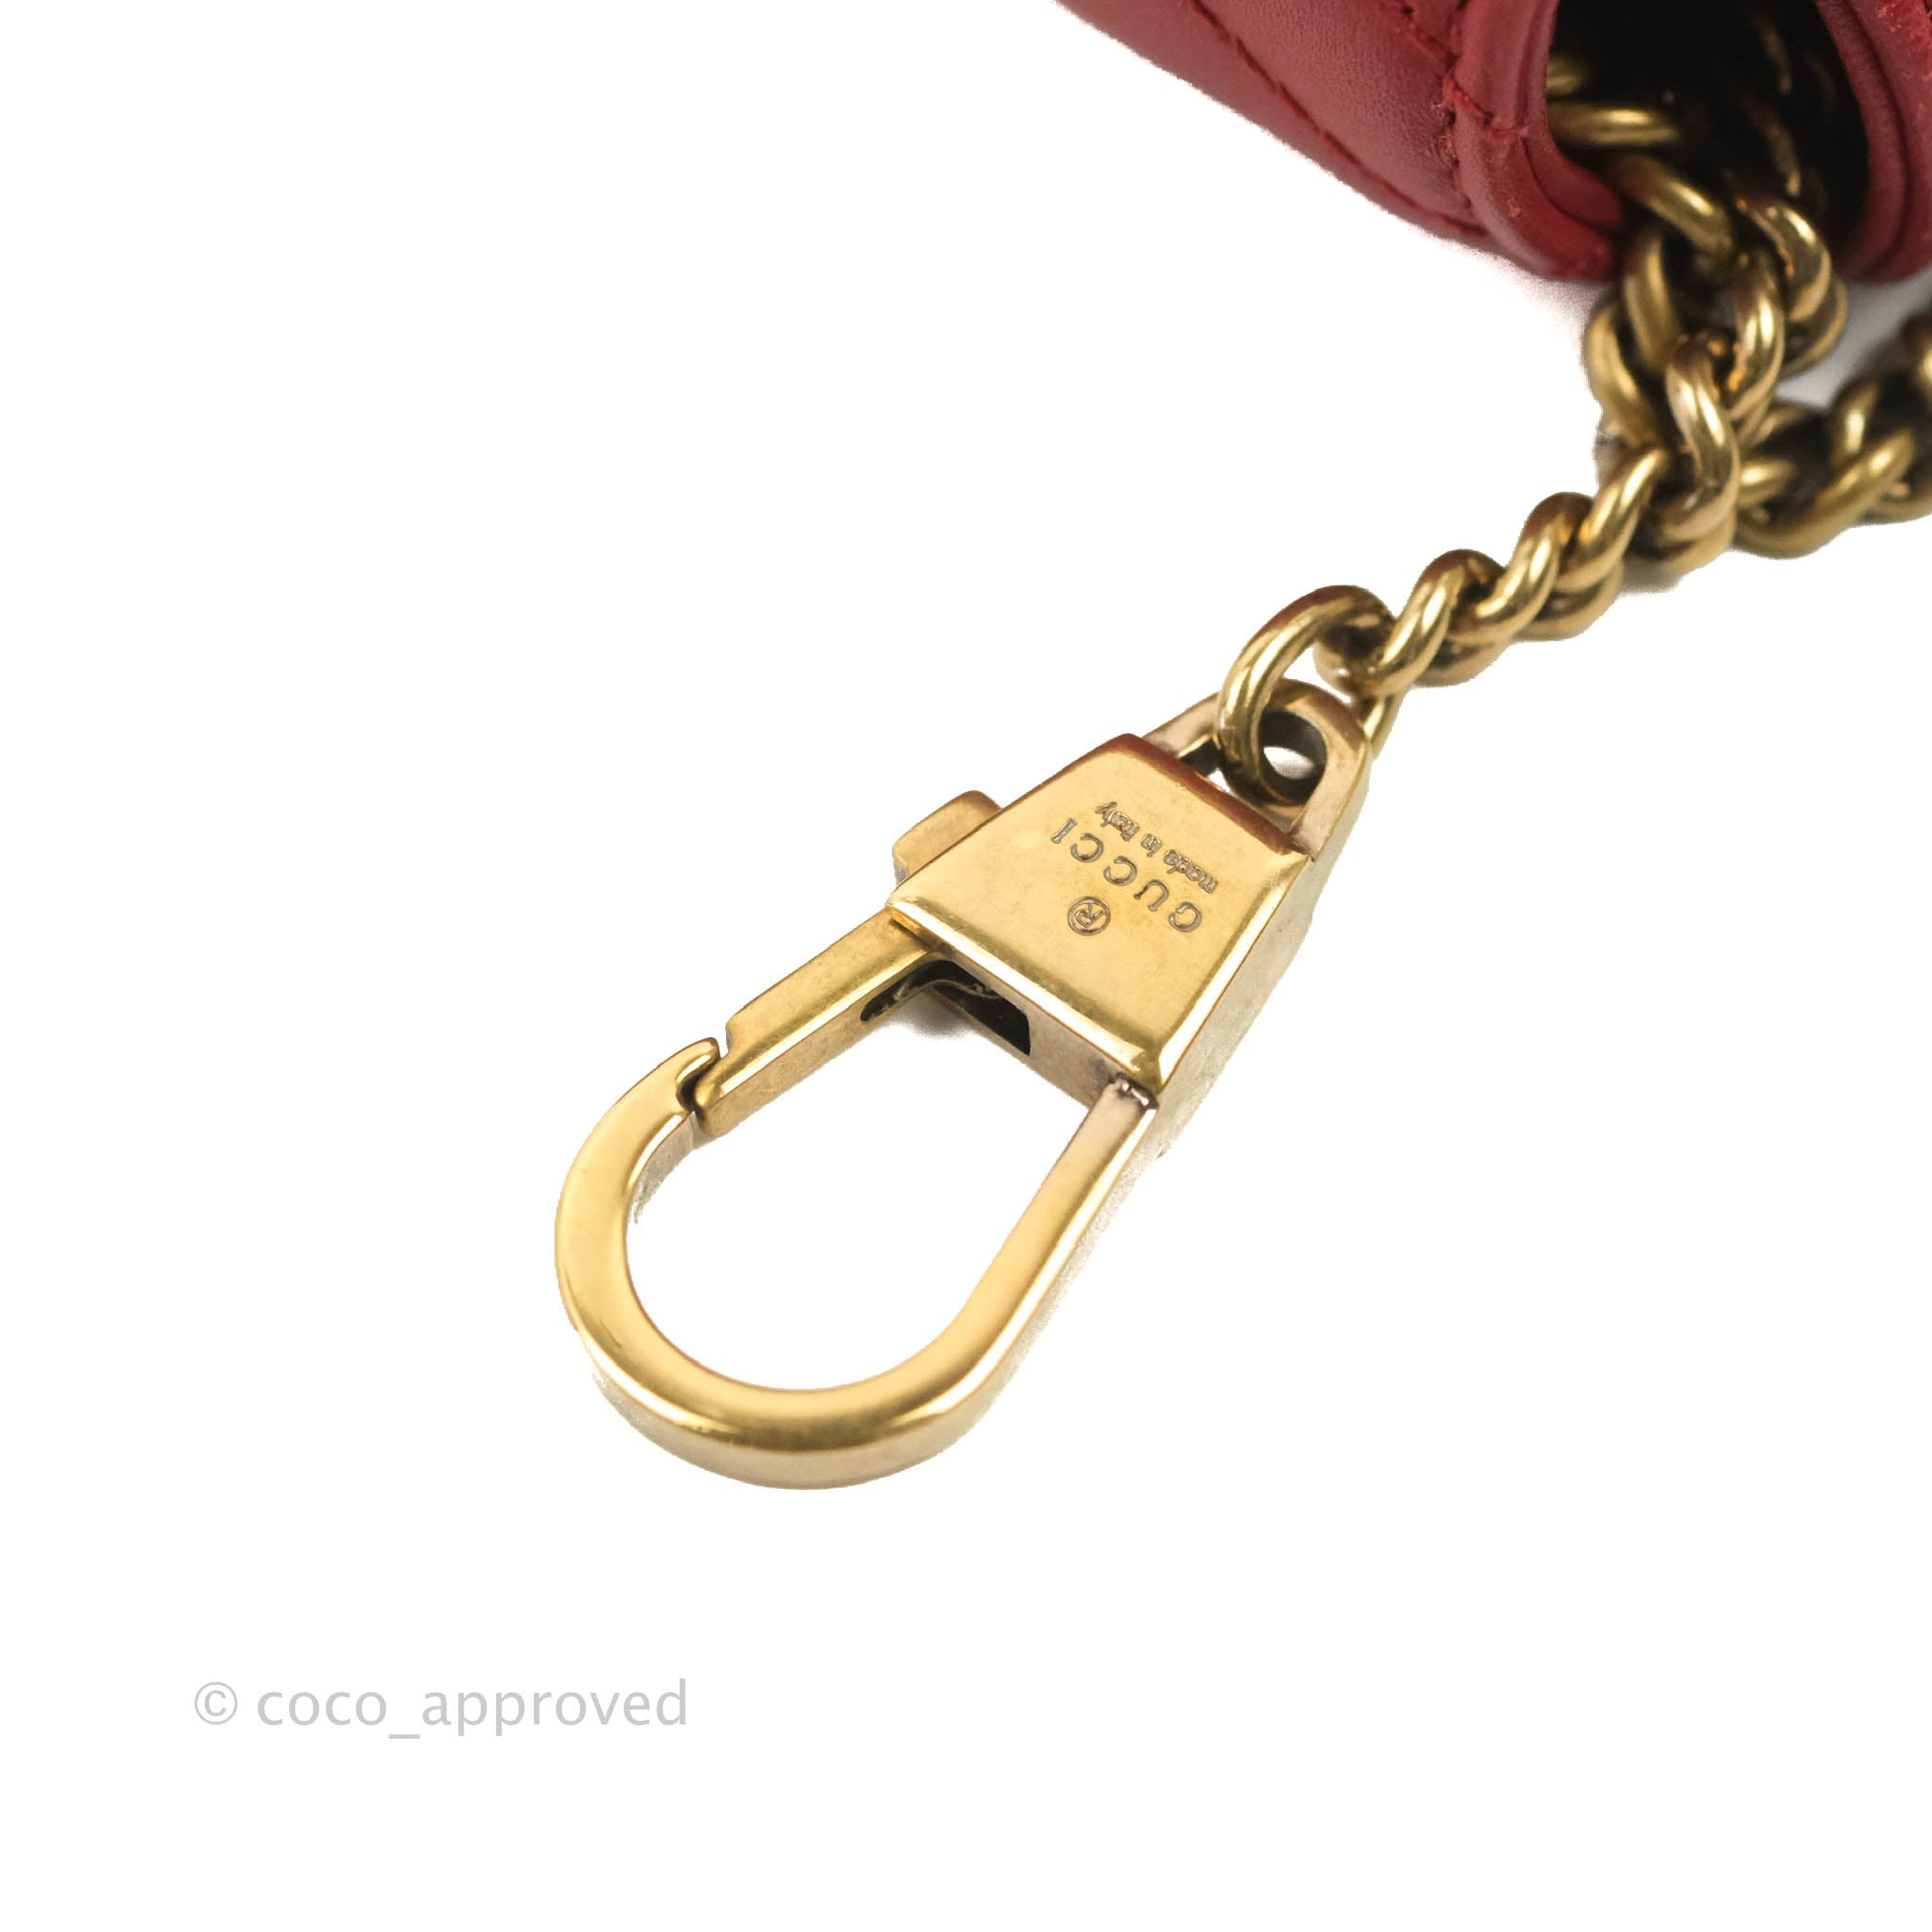 Gucci Red GG Marmont Super Mini Bag – The Closet